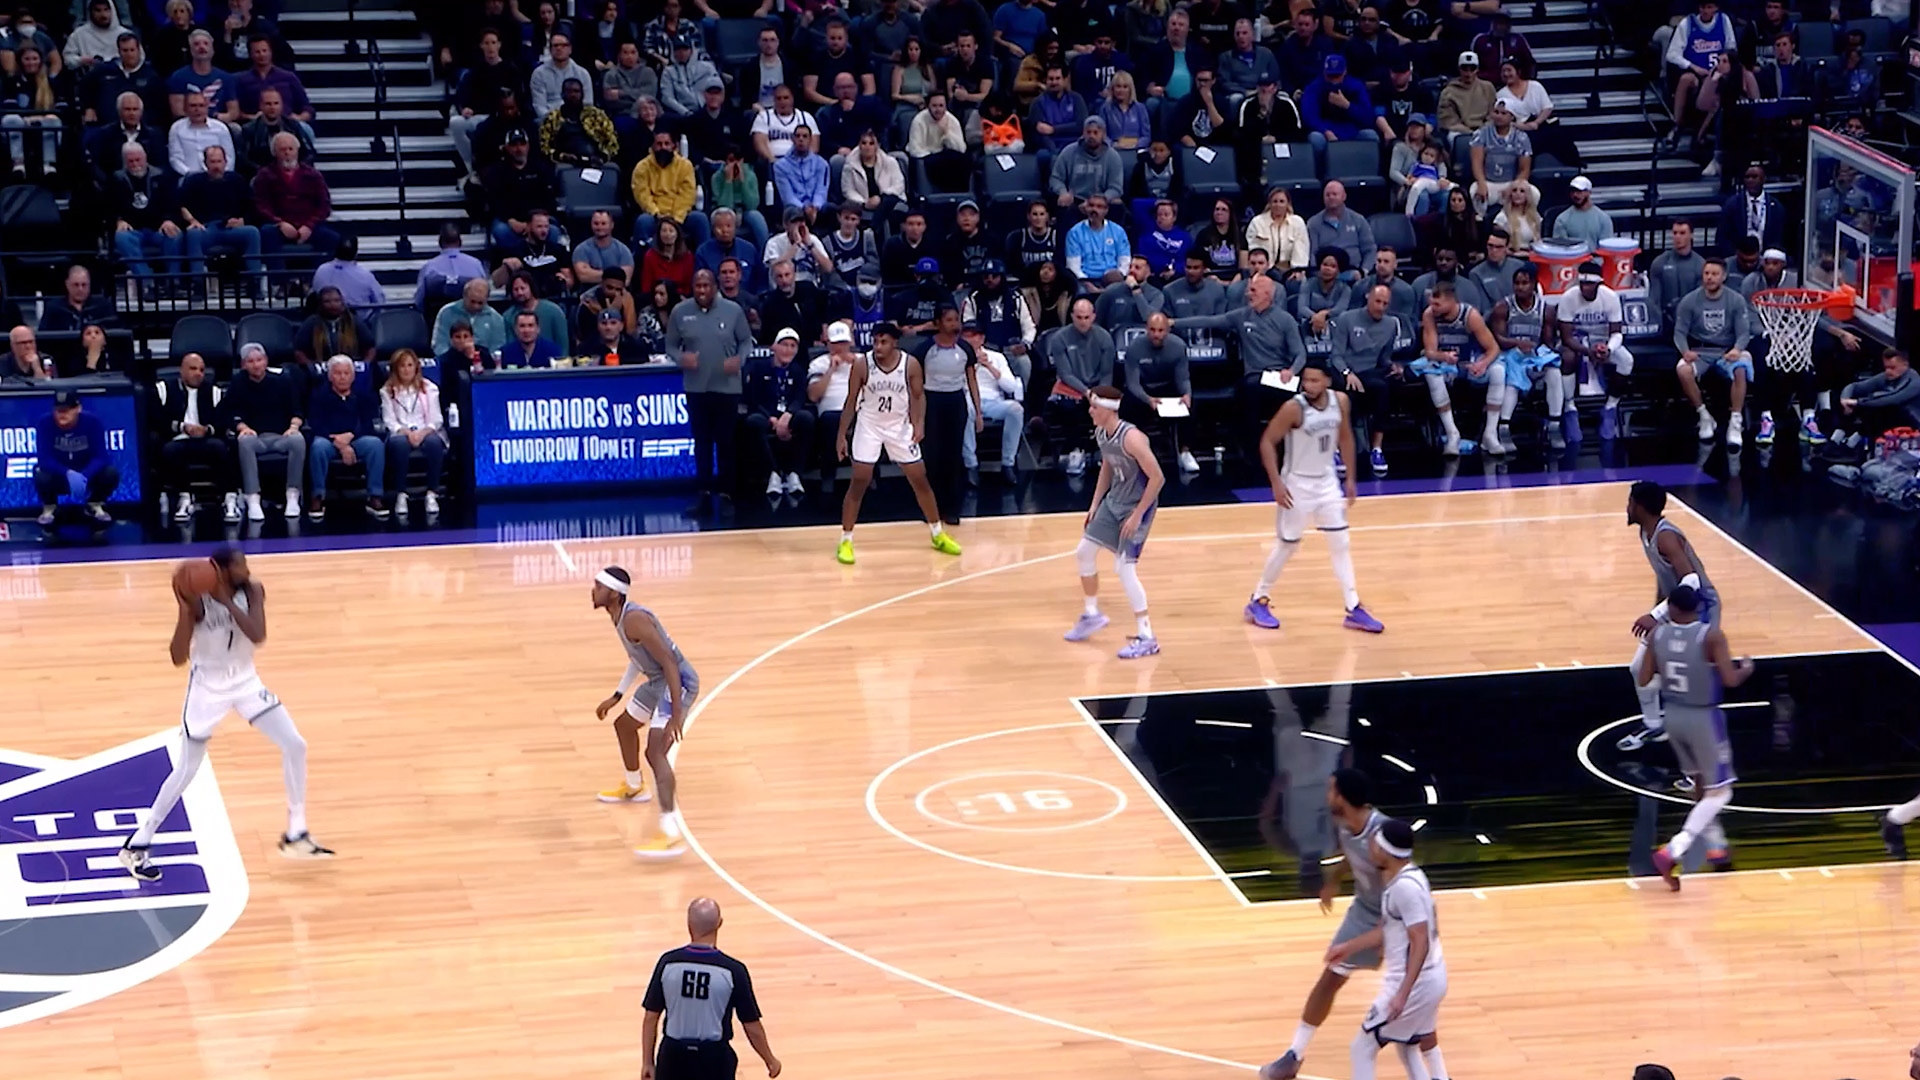 Video-zapis igre NBA 2K24 u kom je prikazana sposobnost funkcije ProPlay da prenese stvarne košarkaške pokrete u igru.